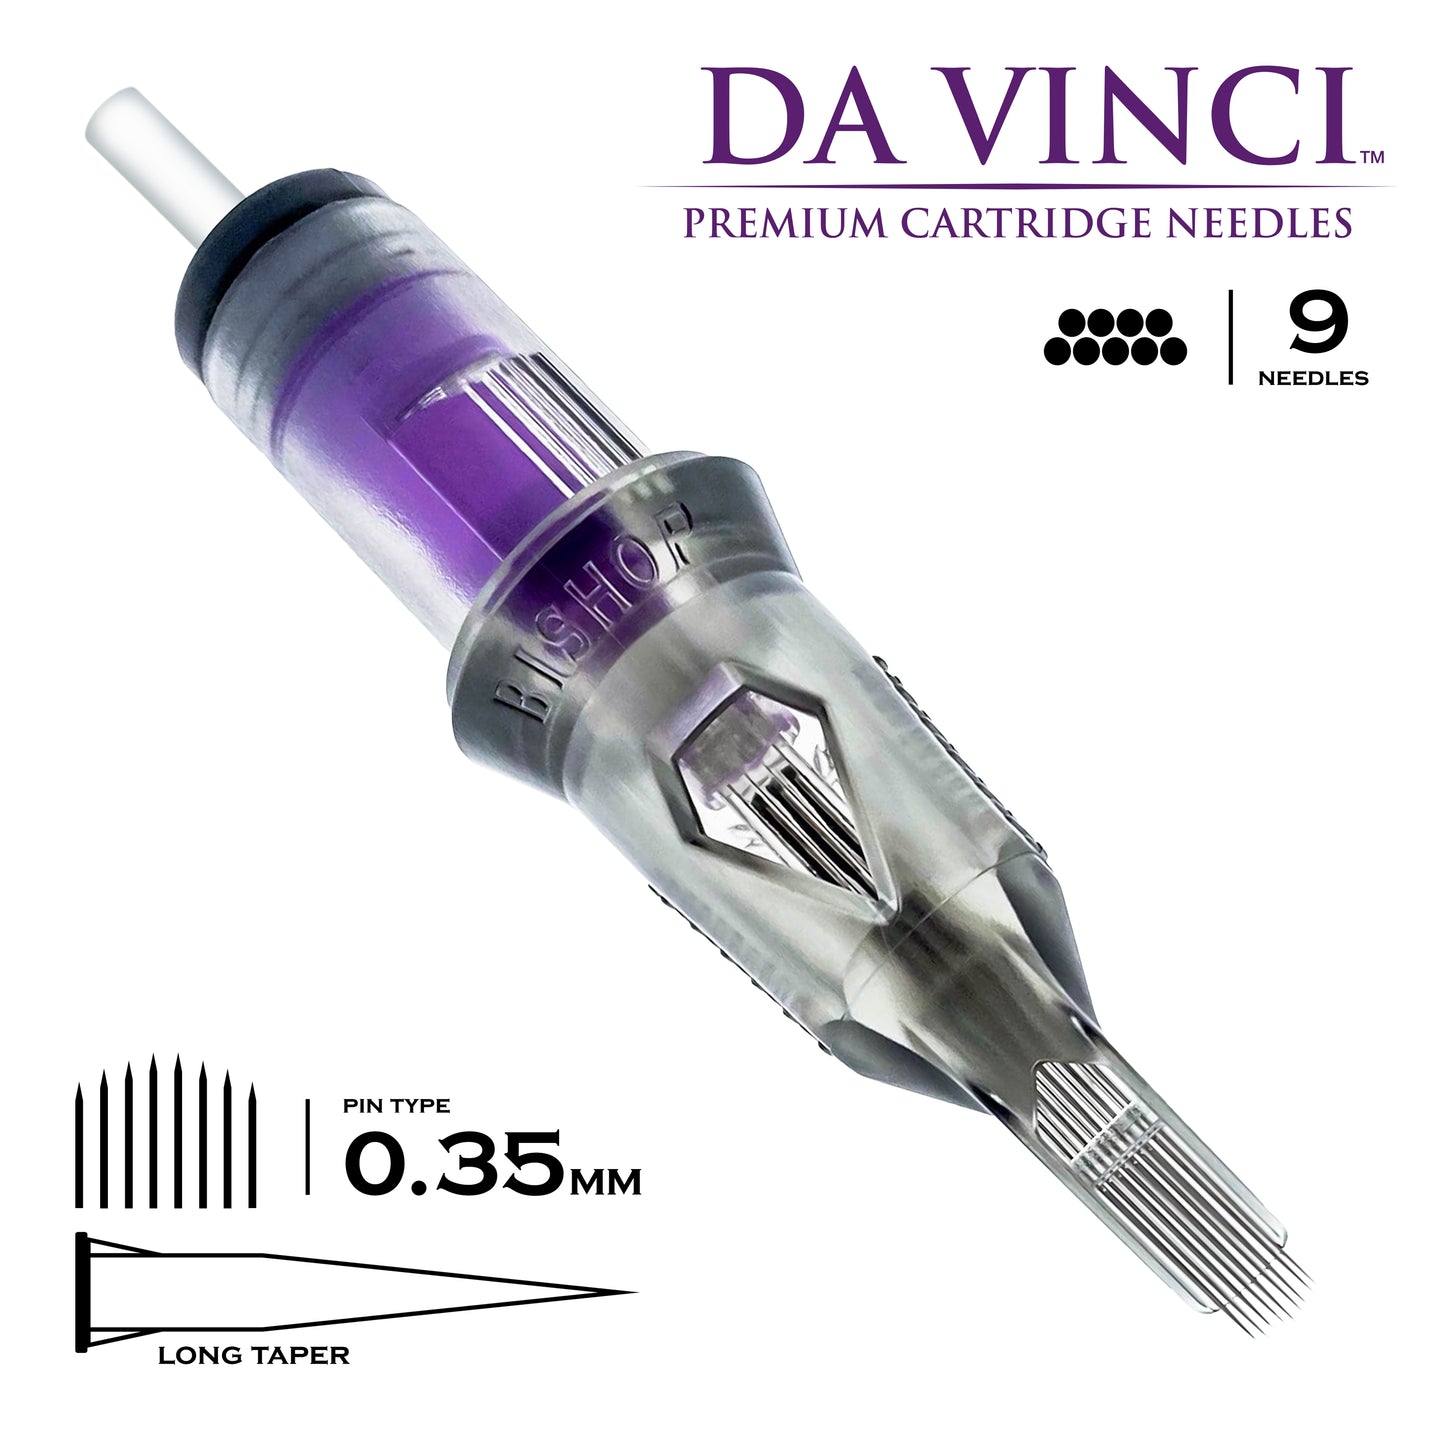 Cartucho Da Vinci V2 Round Magnum